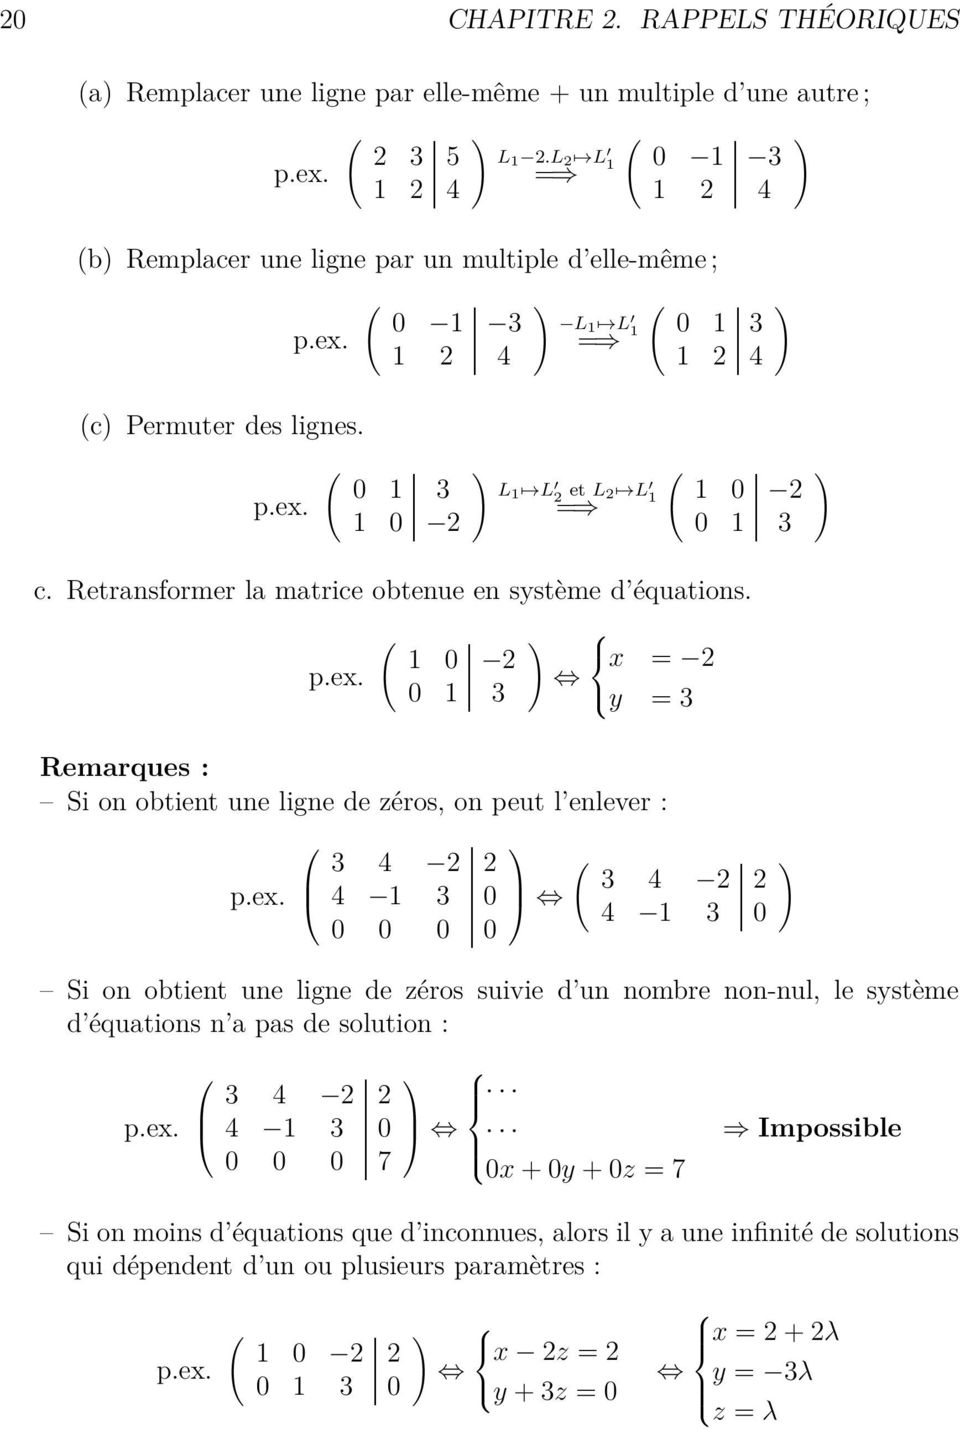 ex. 3 4 2 2 4 3 0 0 0 0 0 ( 3 4 2 2 4 3 0 Si on obtient une ligne de zéros suivie d un nombre non-nul, le système d équations n a pas de solution : p.ex. 3 4 2 2 4 3 0 0 0 0 7 0x + 0y + 0z = 7 ) Impossible Si on moins d équations que d inconnues, alors il y a une infinité de solutions qui dépendent d un ou plusieurs paramètres : p.